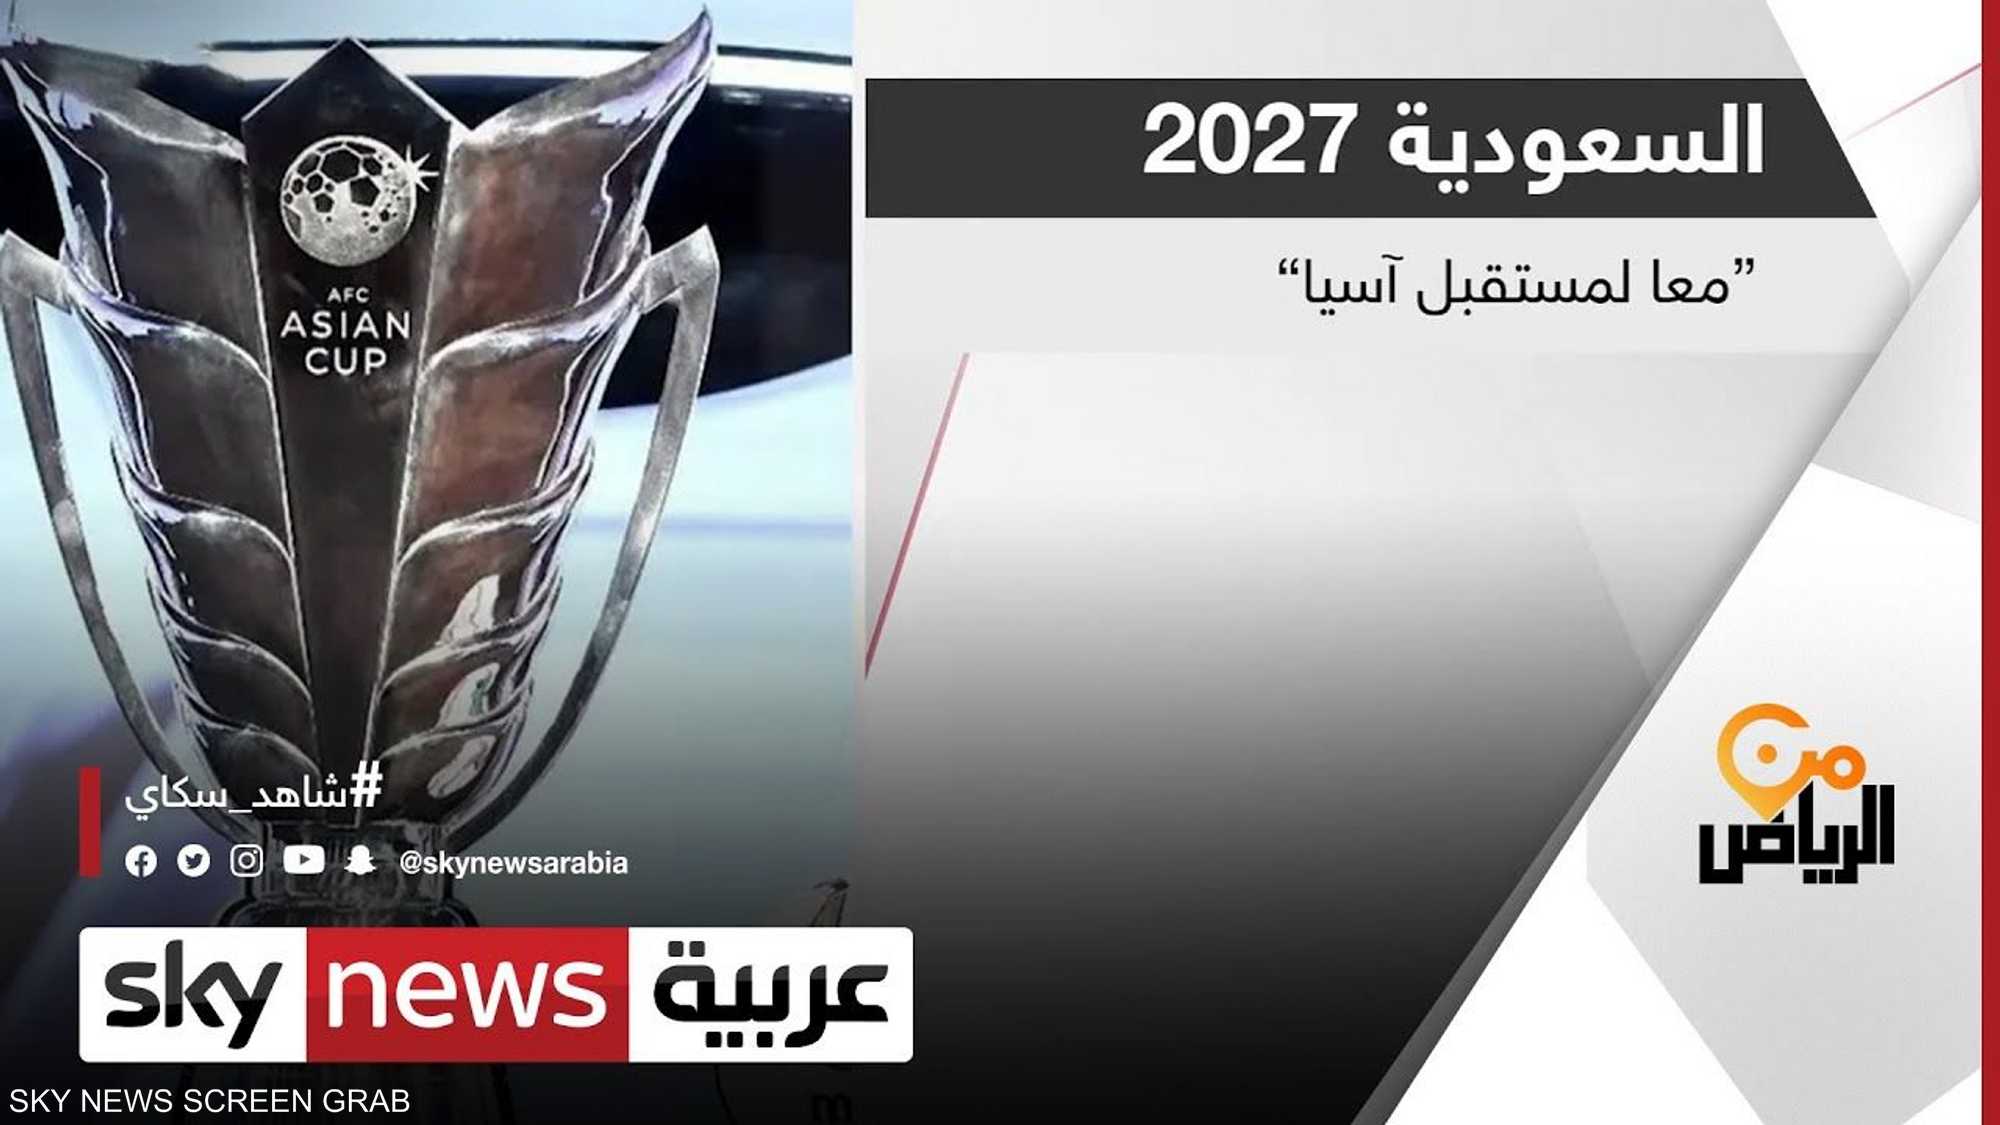 ملف استضافة السعودية لكأس آسيا 2027